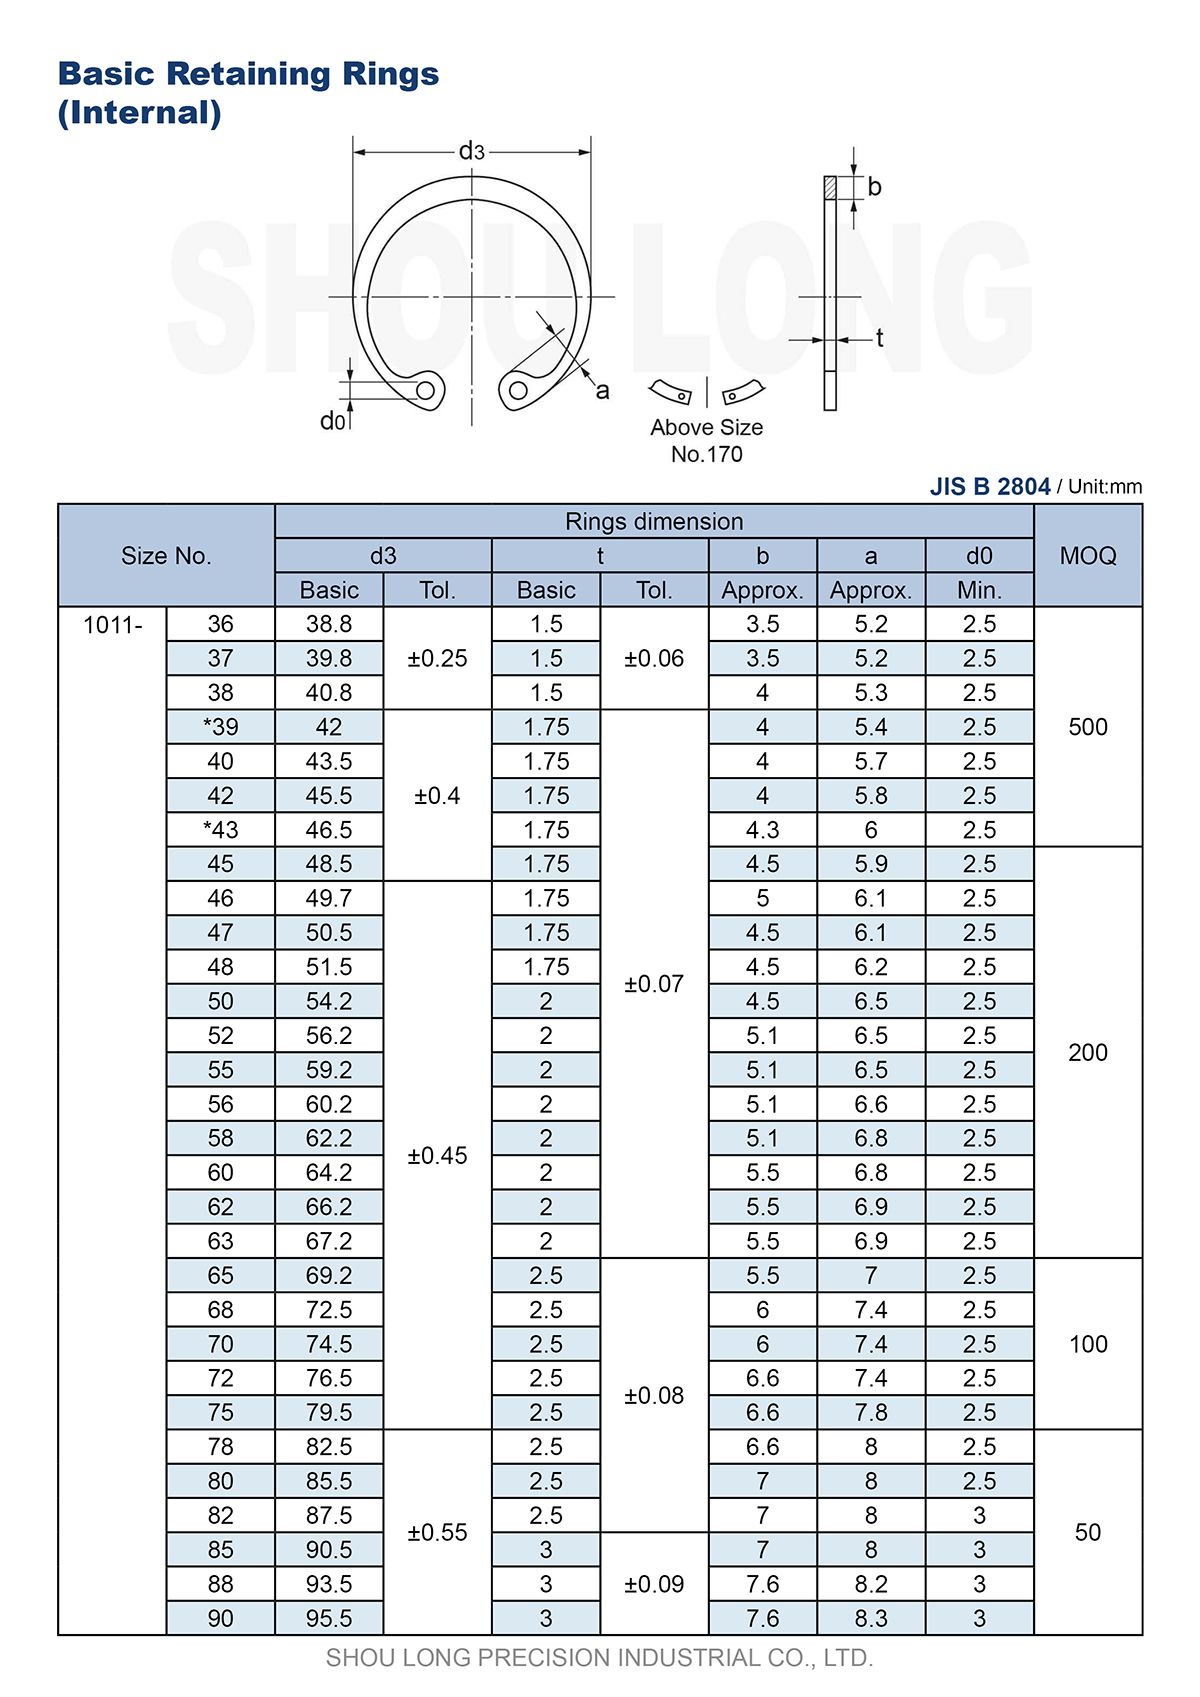 Especificação dos Anéis de Retenção Básicos Métricos JIS para Furos B2804-2